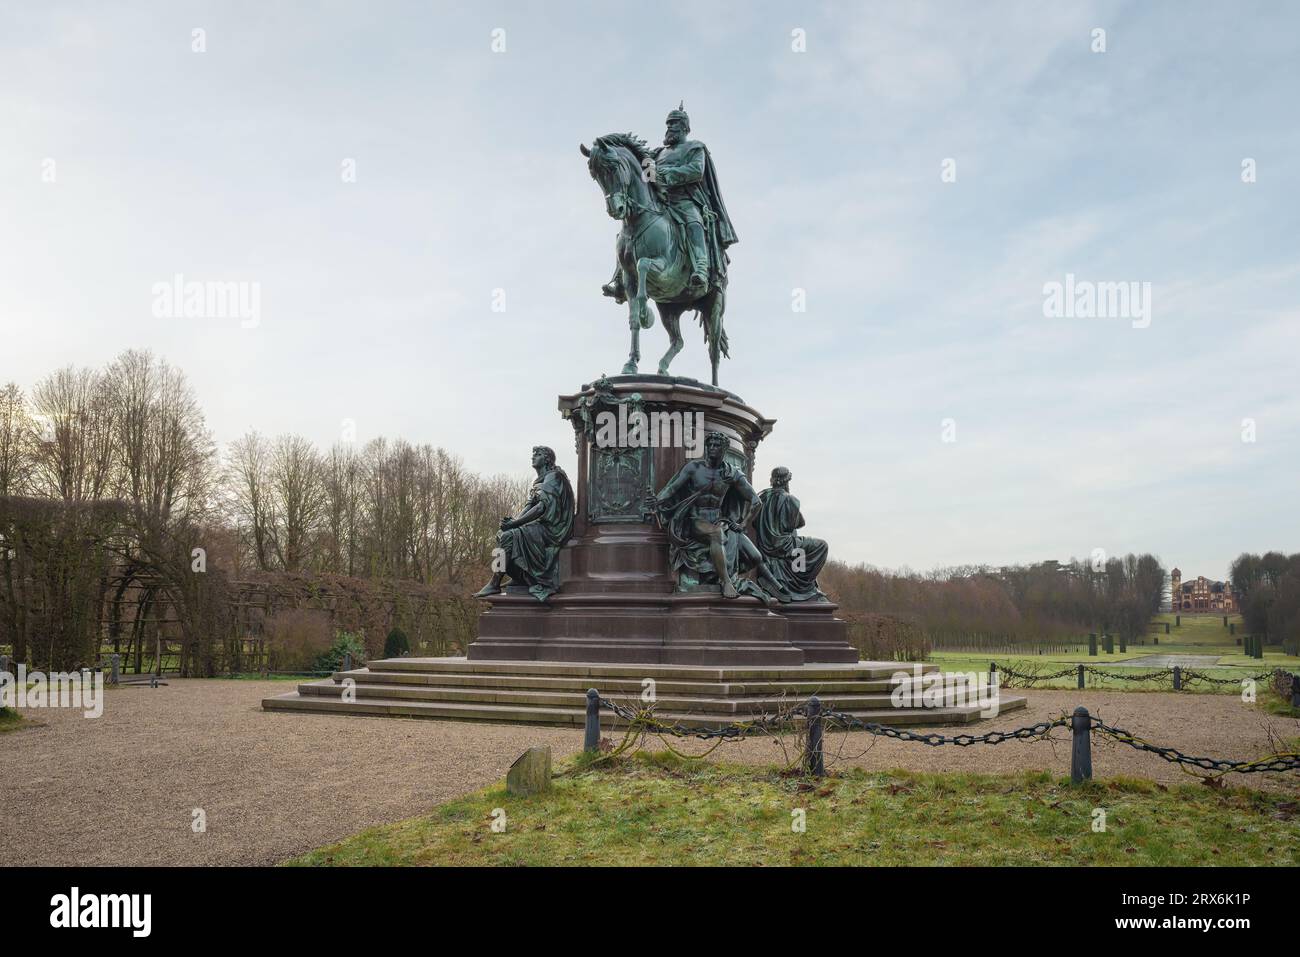 Monumento al Gran Duque Federico Francisco II de Mecklemburgo-Schwerin - Schwerin, Alemania Foto de stock